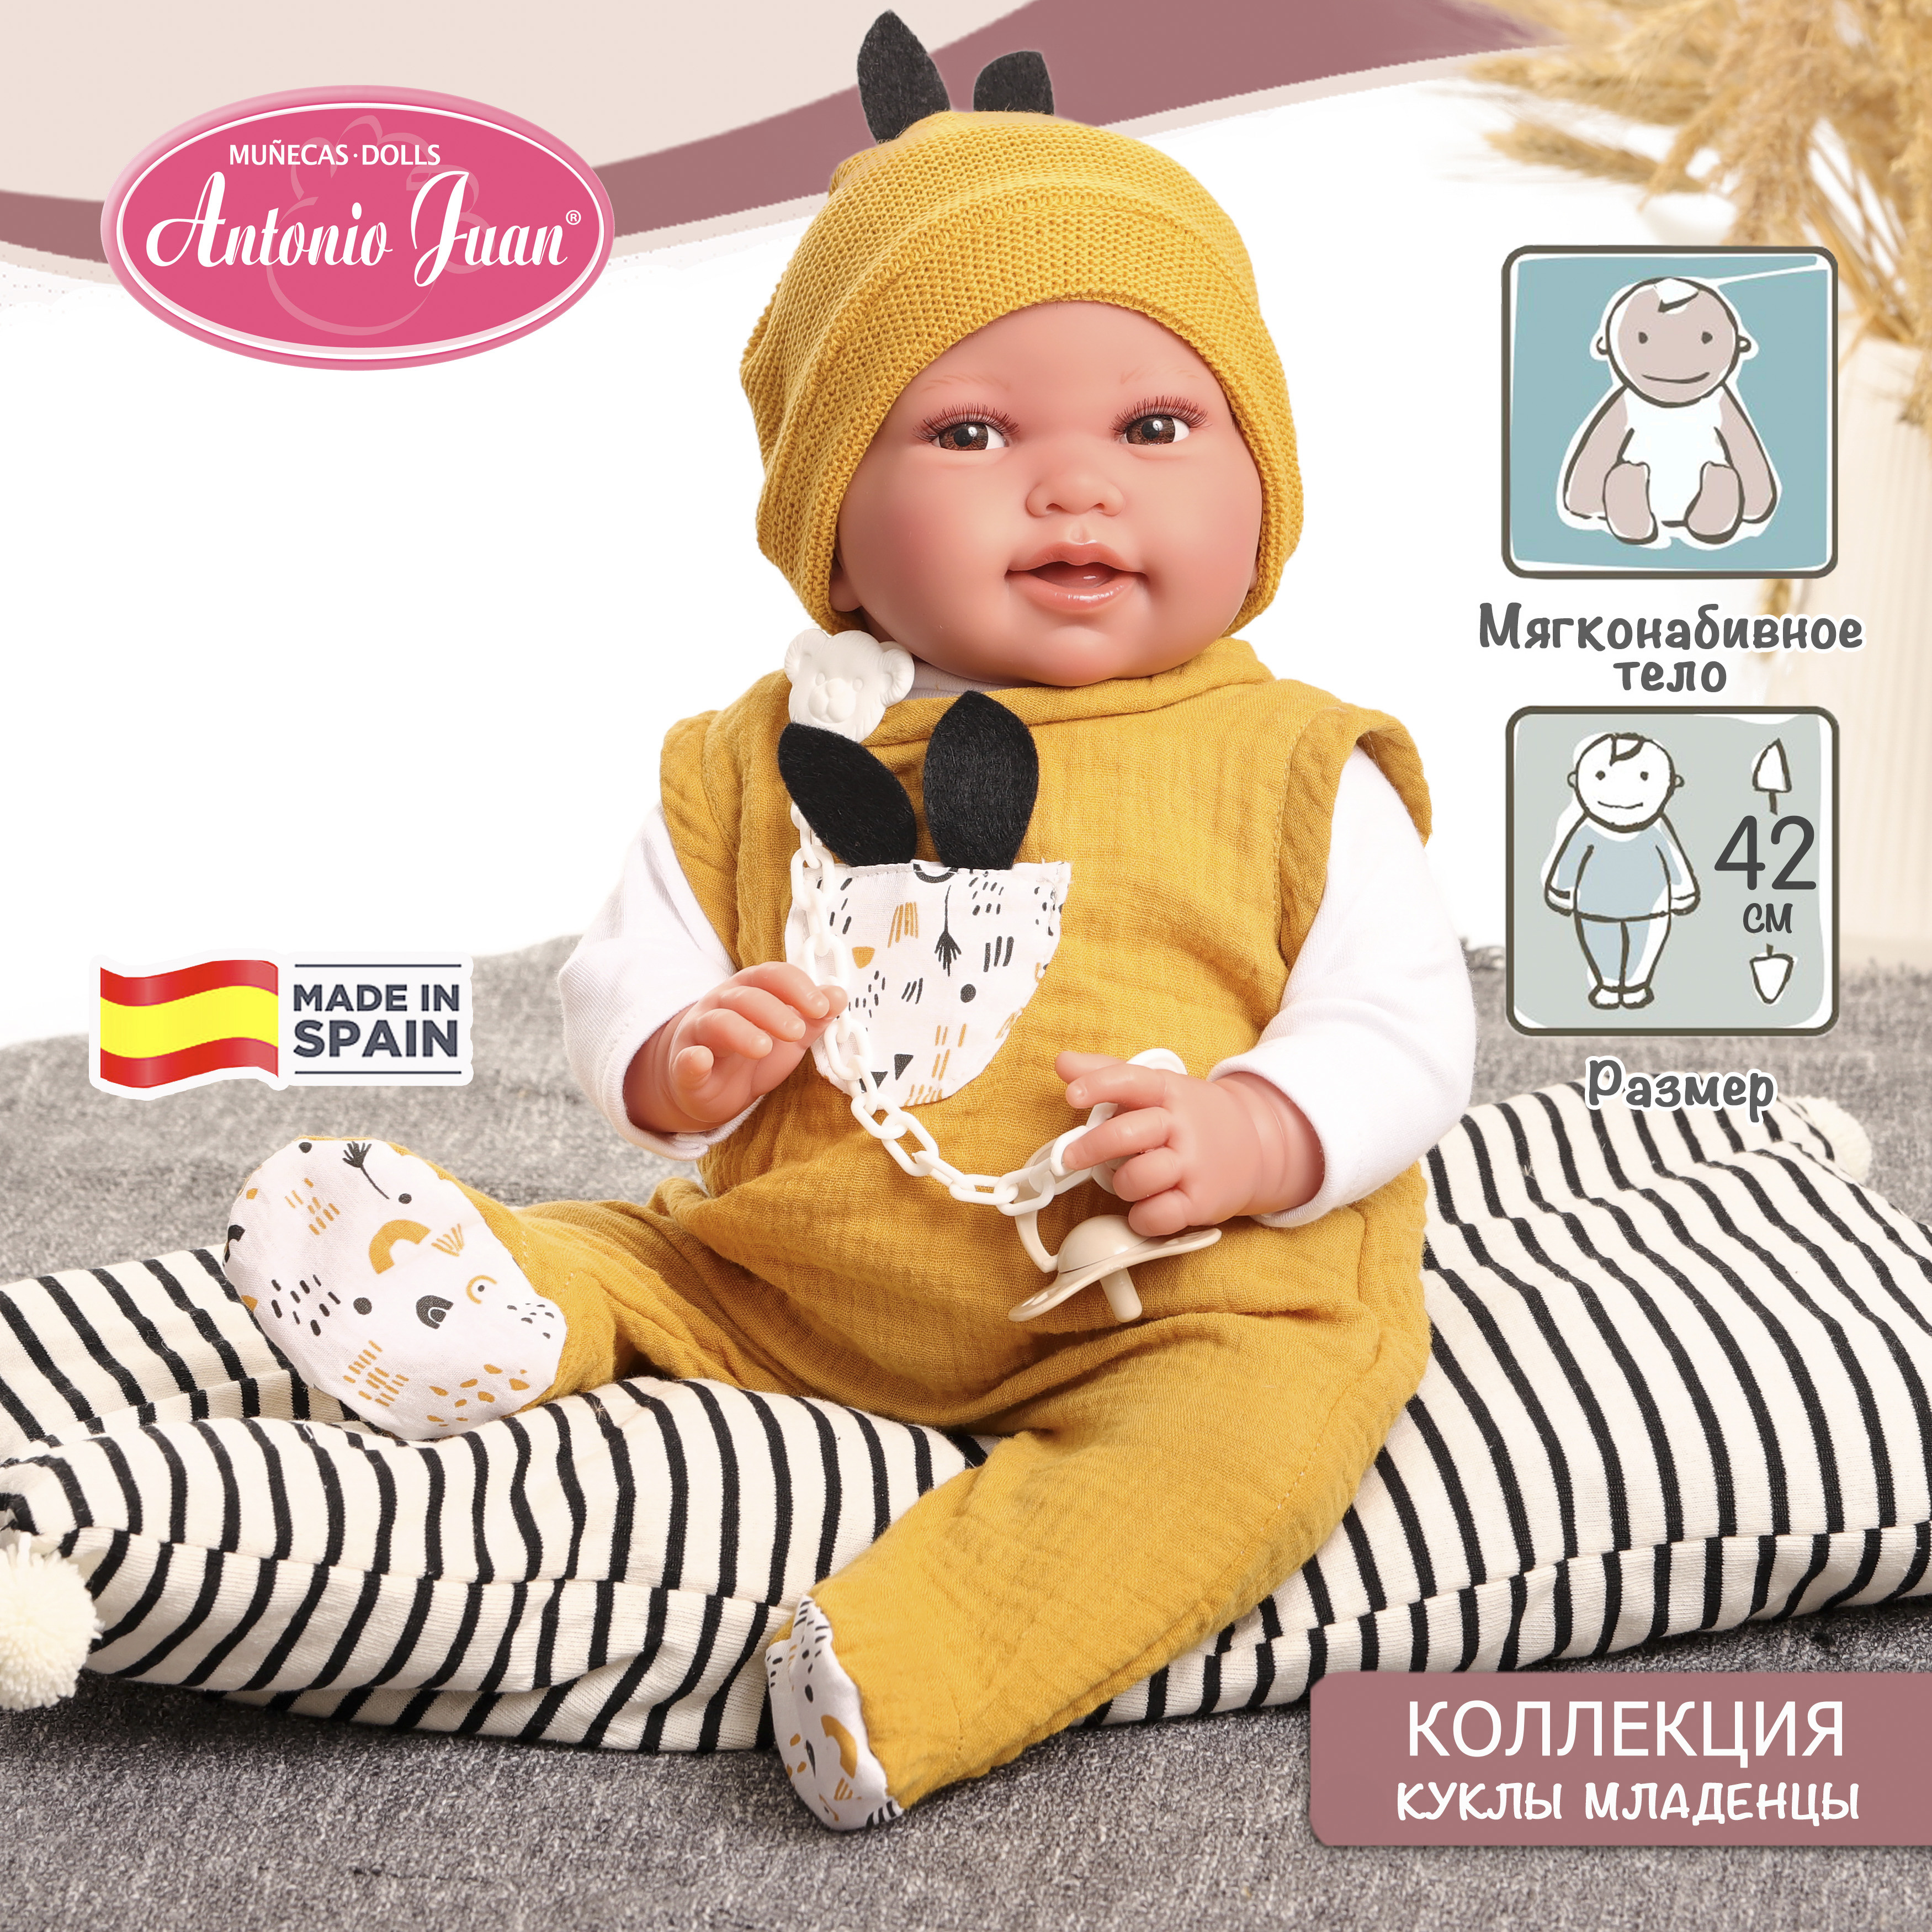 Кукла младенец испанская Antonio Juan Пипо в жёлтом, 42 см, мягконабивная 33234 кукла говорящая antonio juan азалия в красном 27 см смеётся мягконабивная 12020